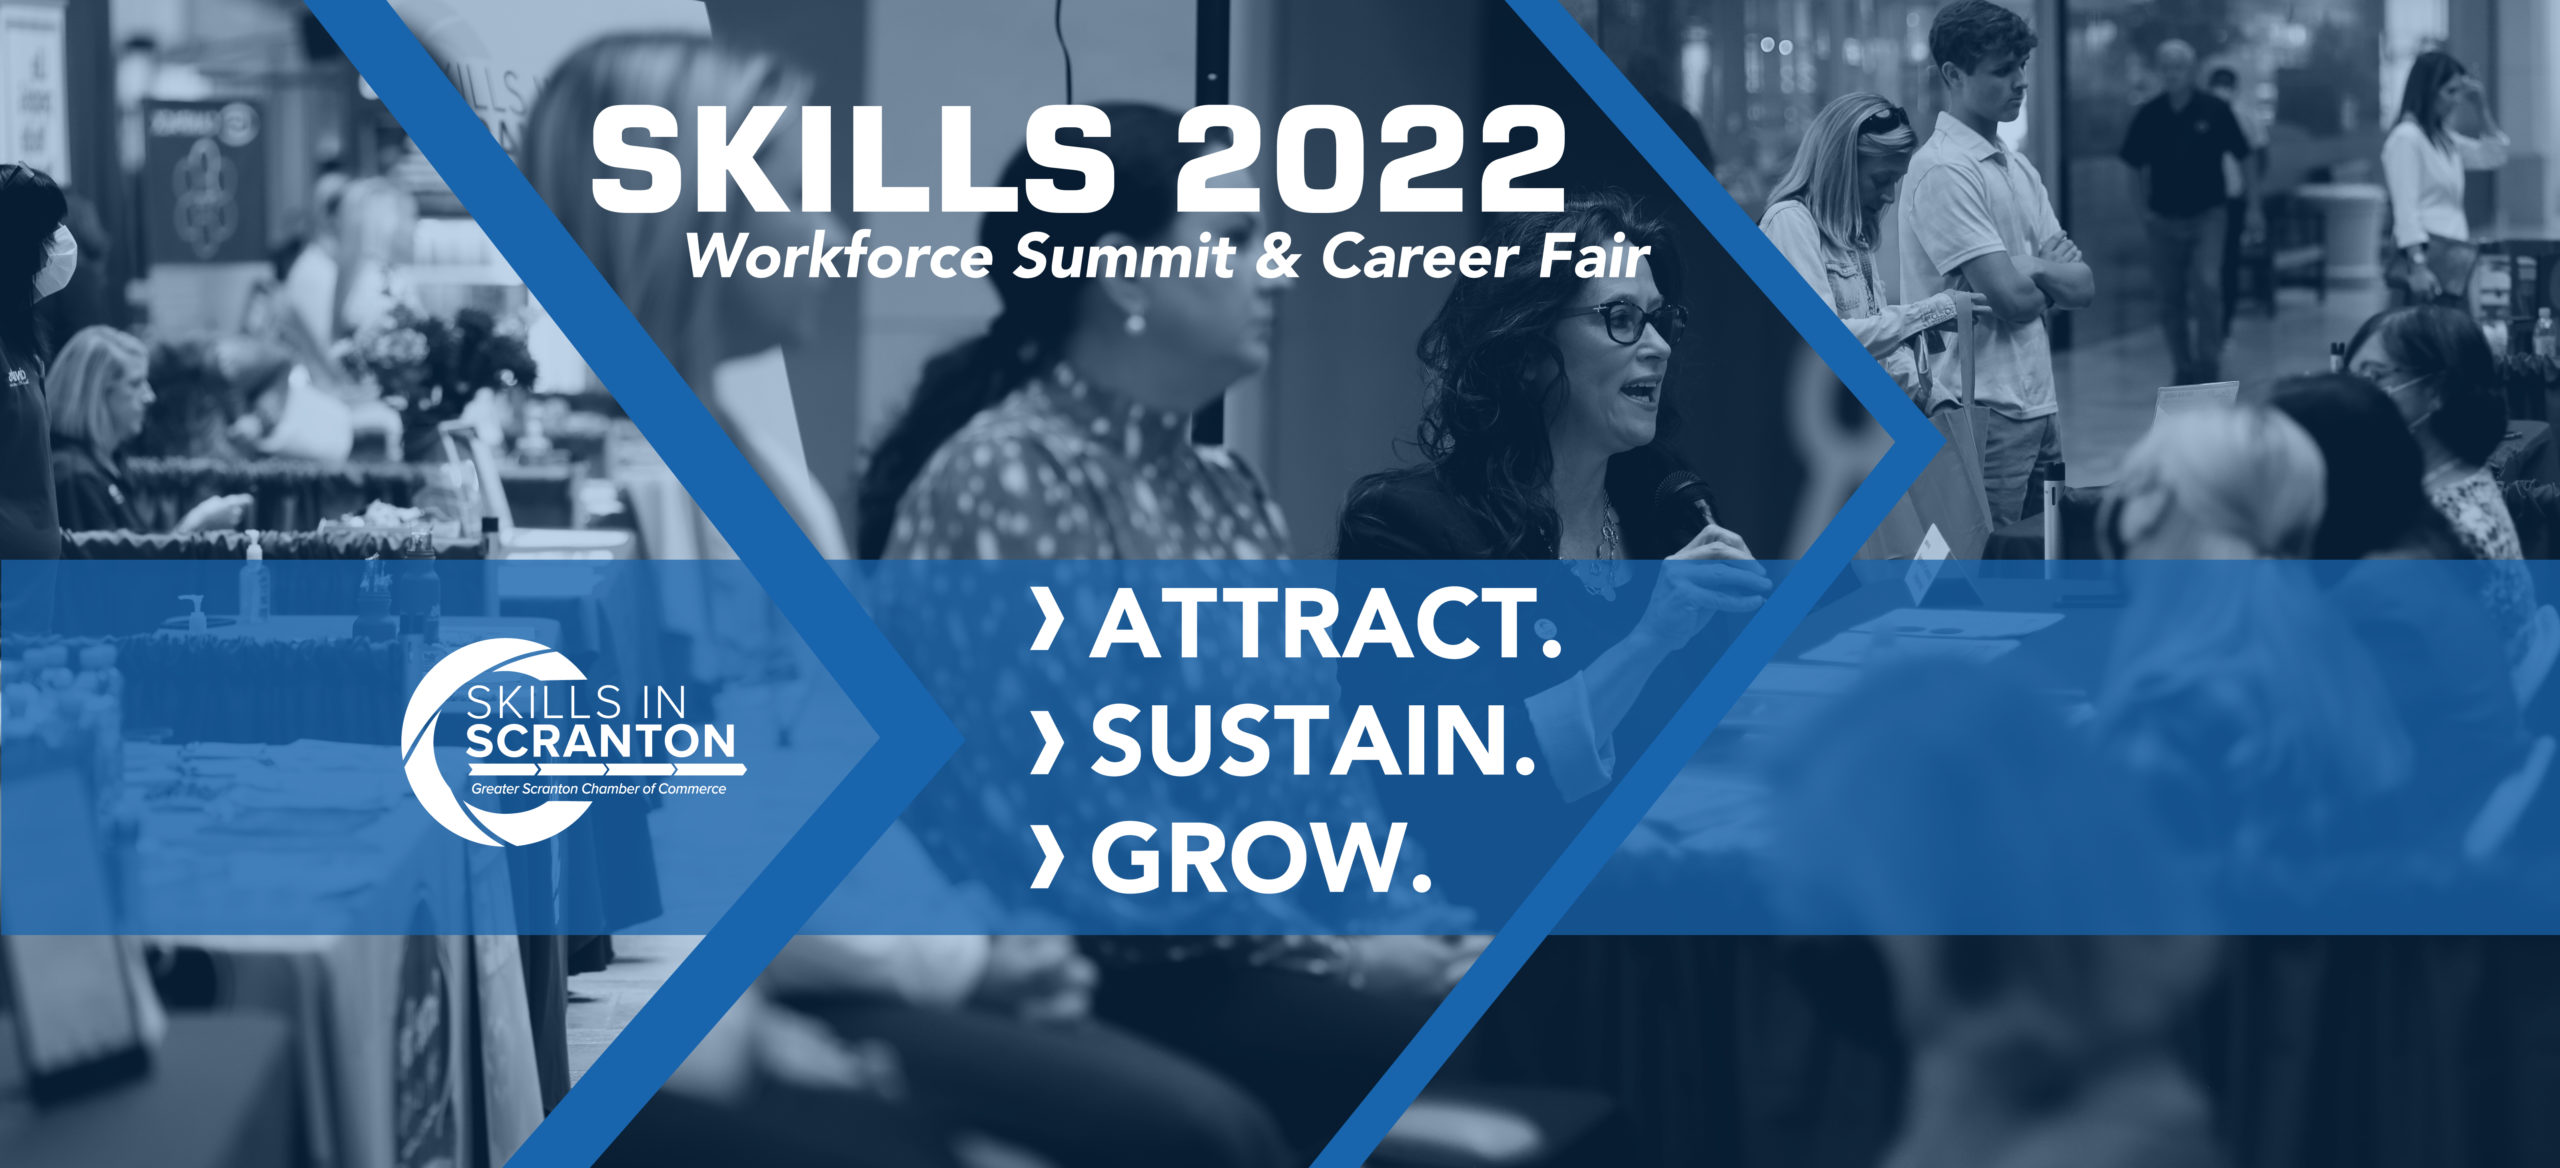 SKILLS 2022: Workforce Summit & Career Fair